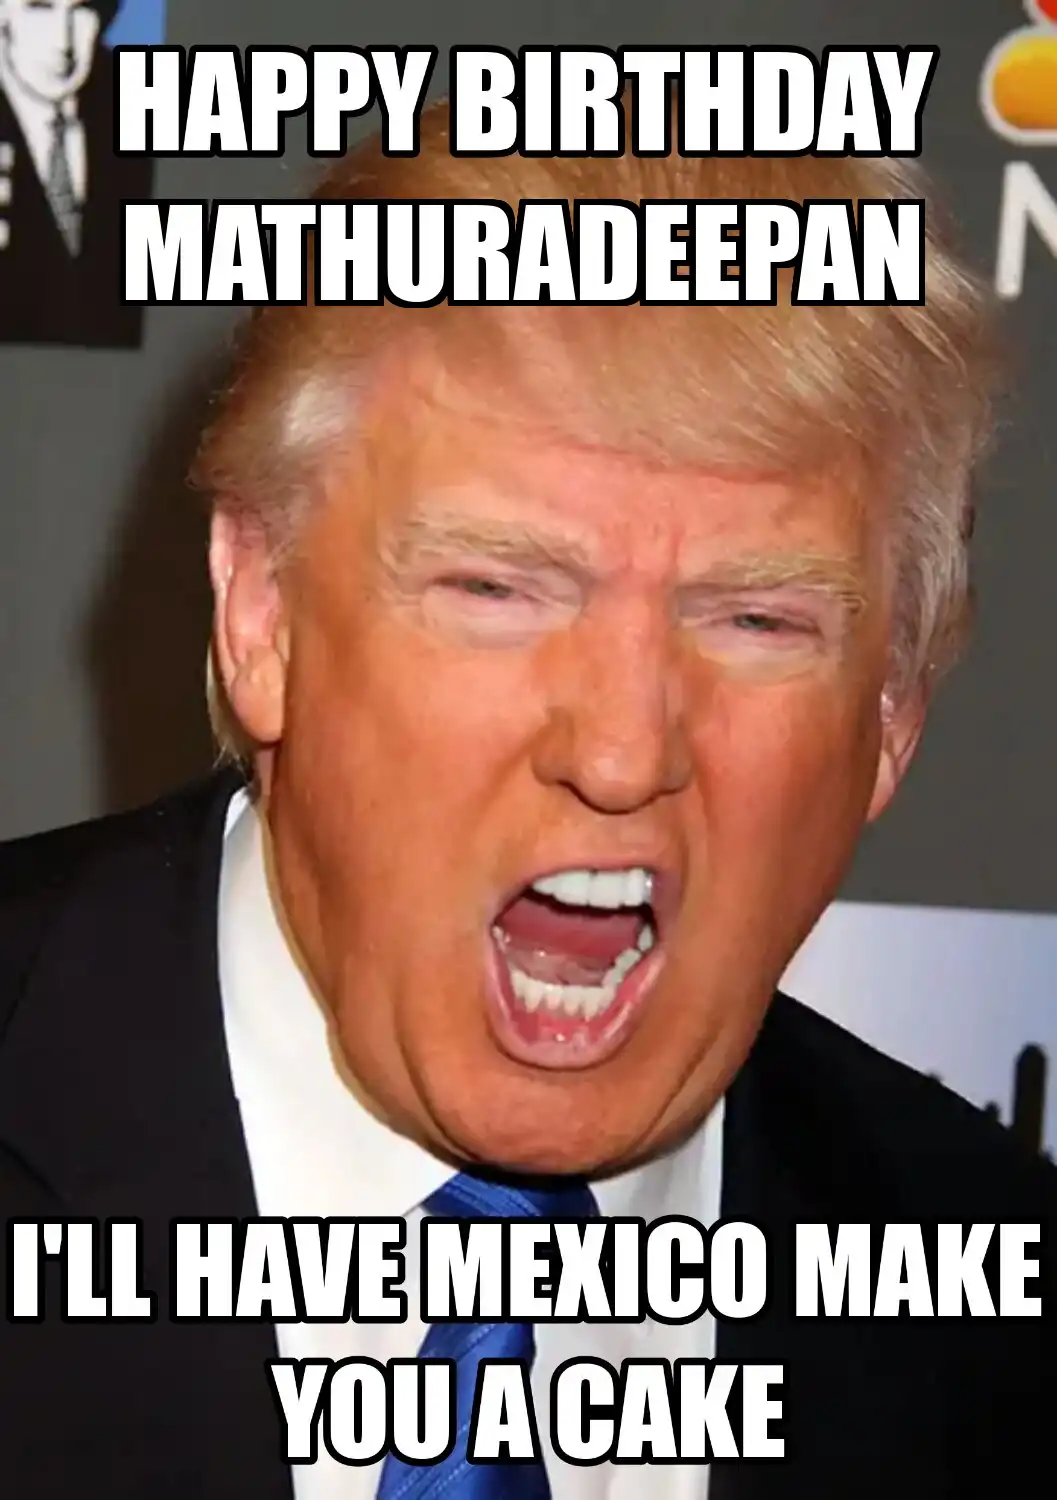 Happy Birthday Mathuradeepan Mexico Make You A Cake Meme